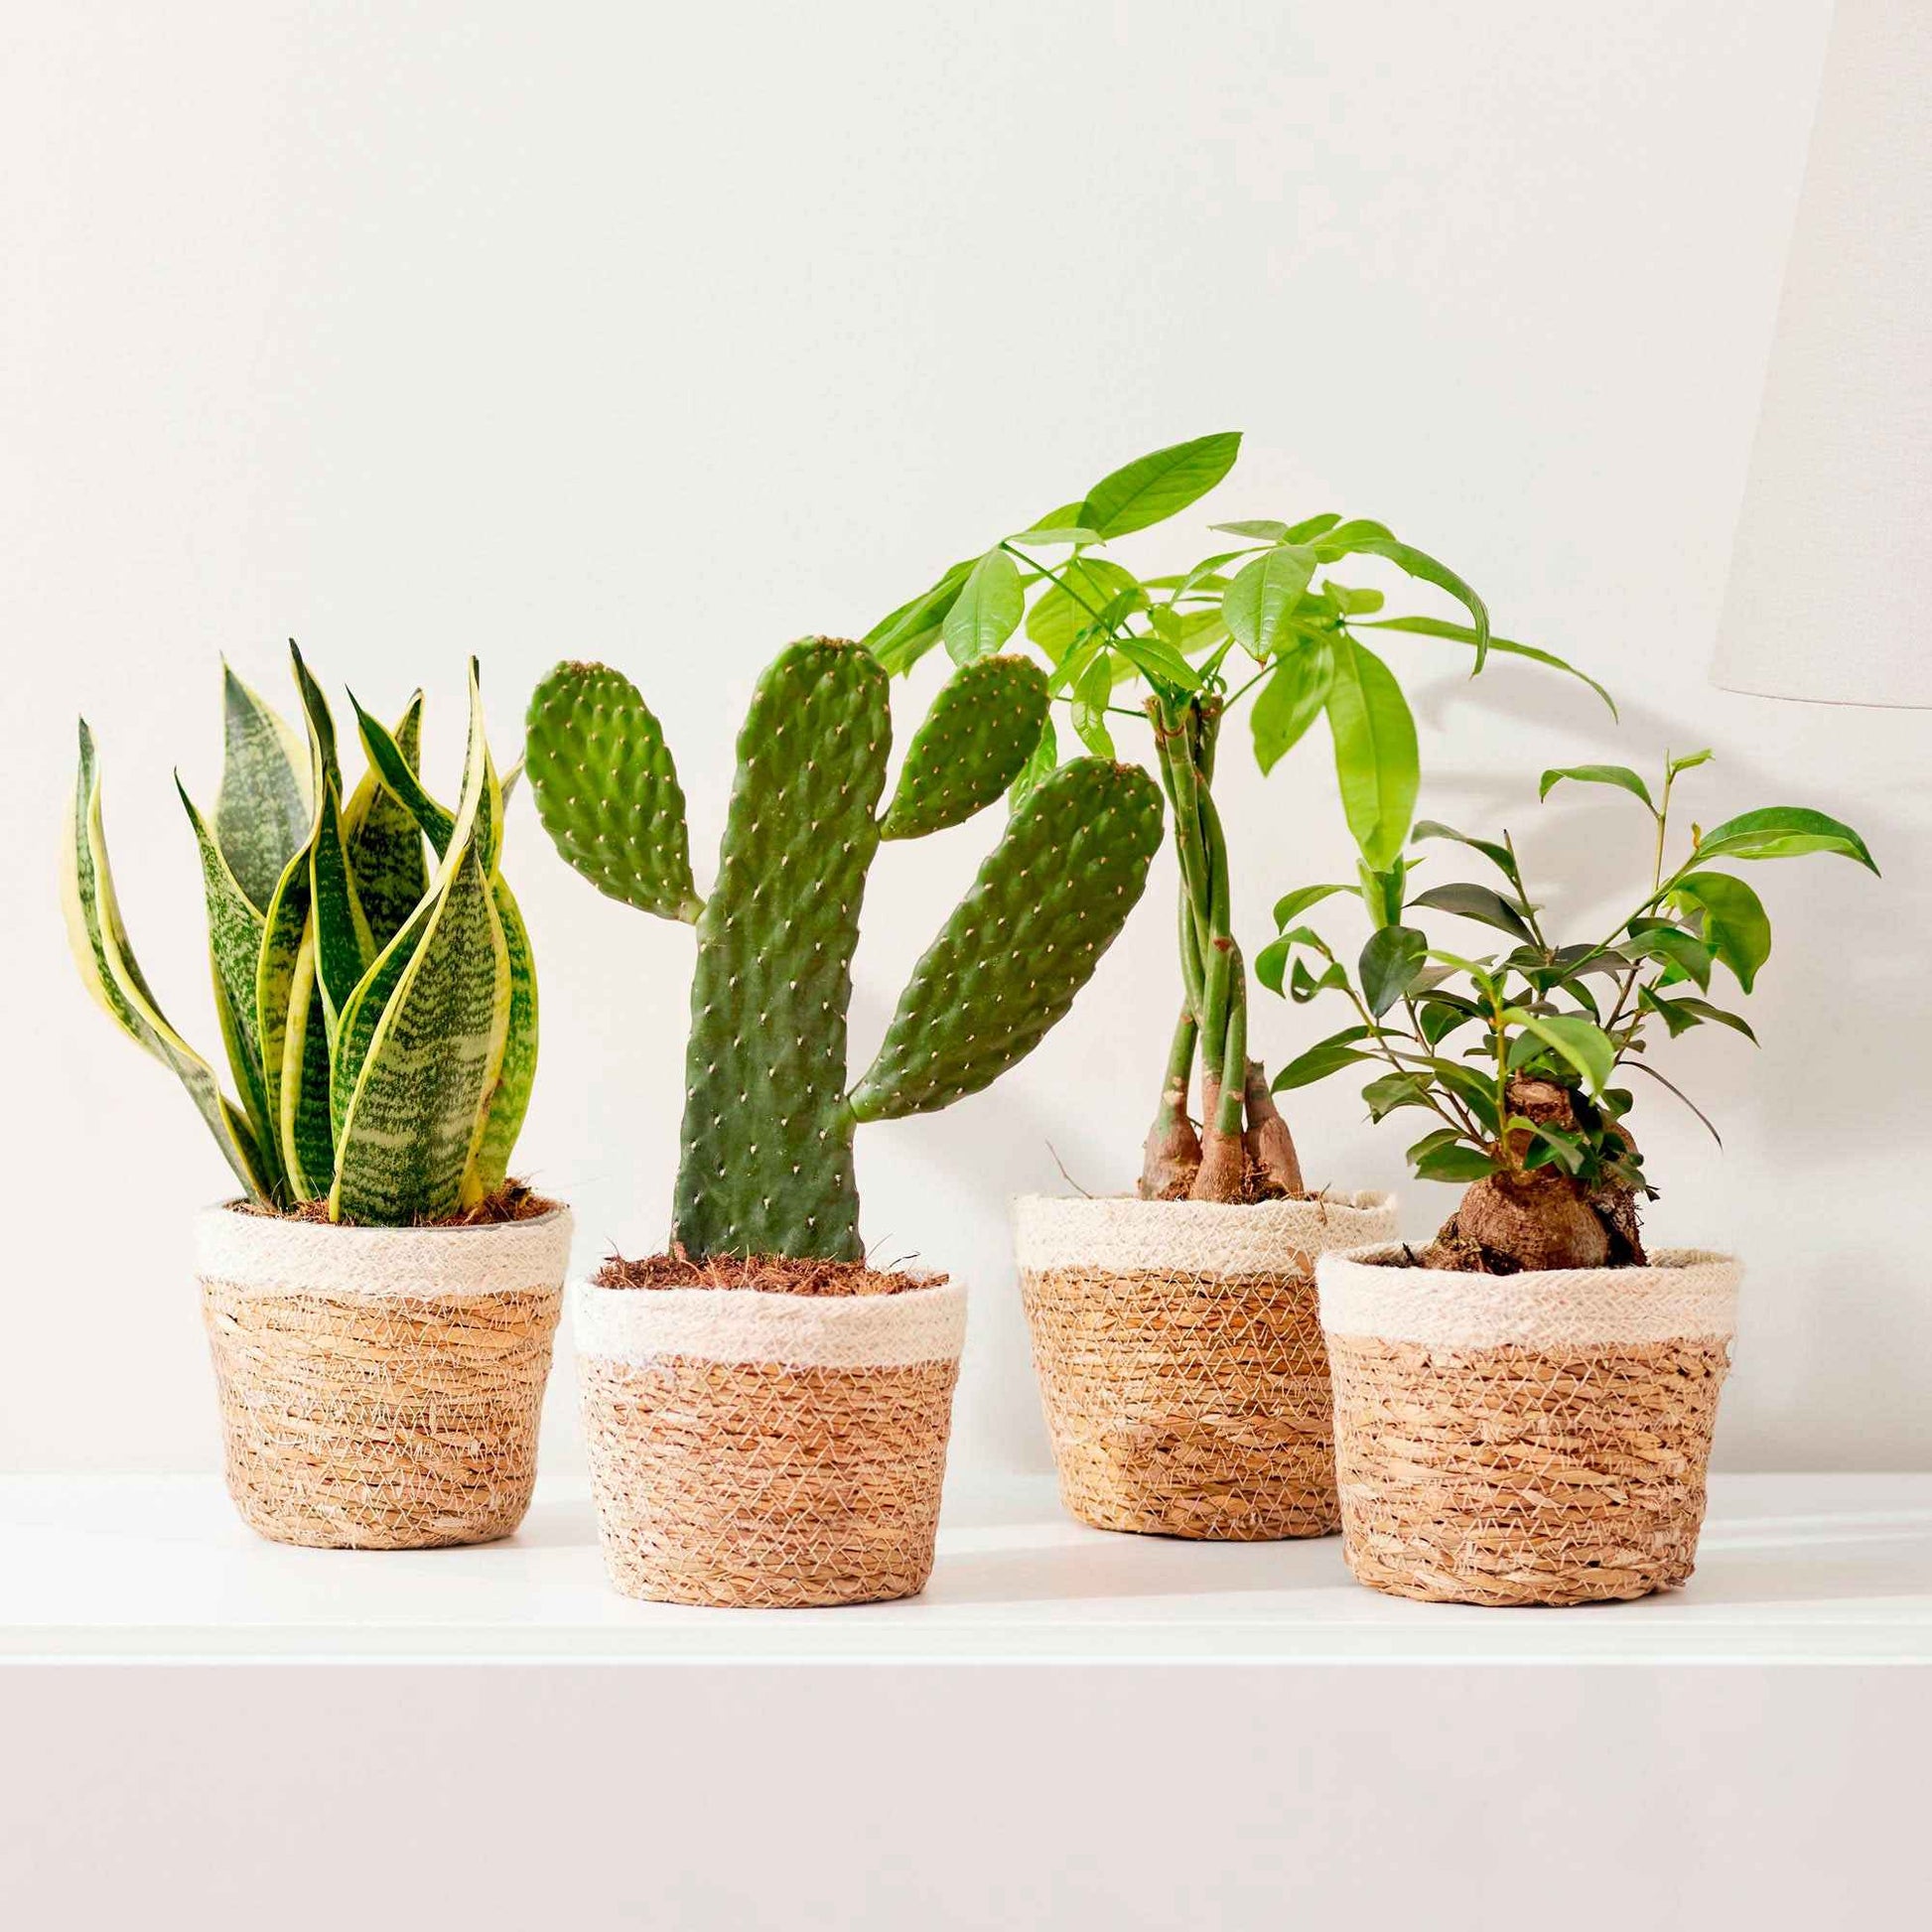 4 Zimmerpflanzen 'Asia Mix' Grün inkl. Dekotopf - Grüne Zimmerpflanzen